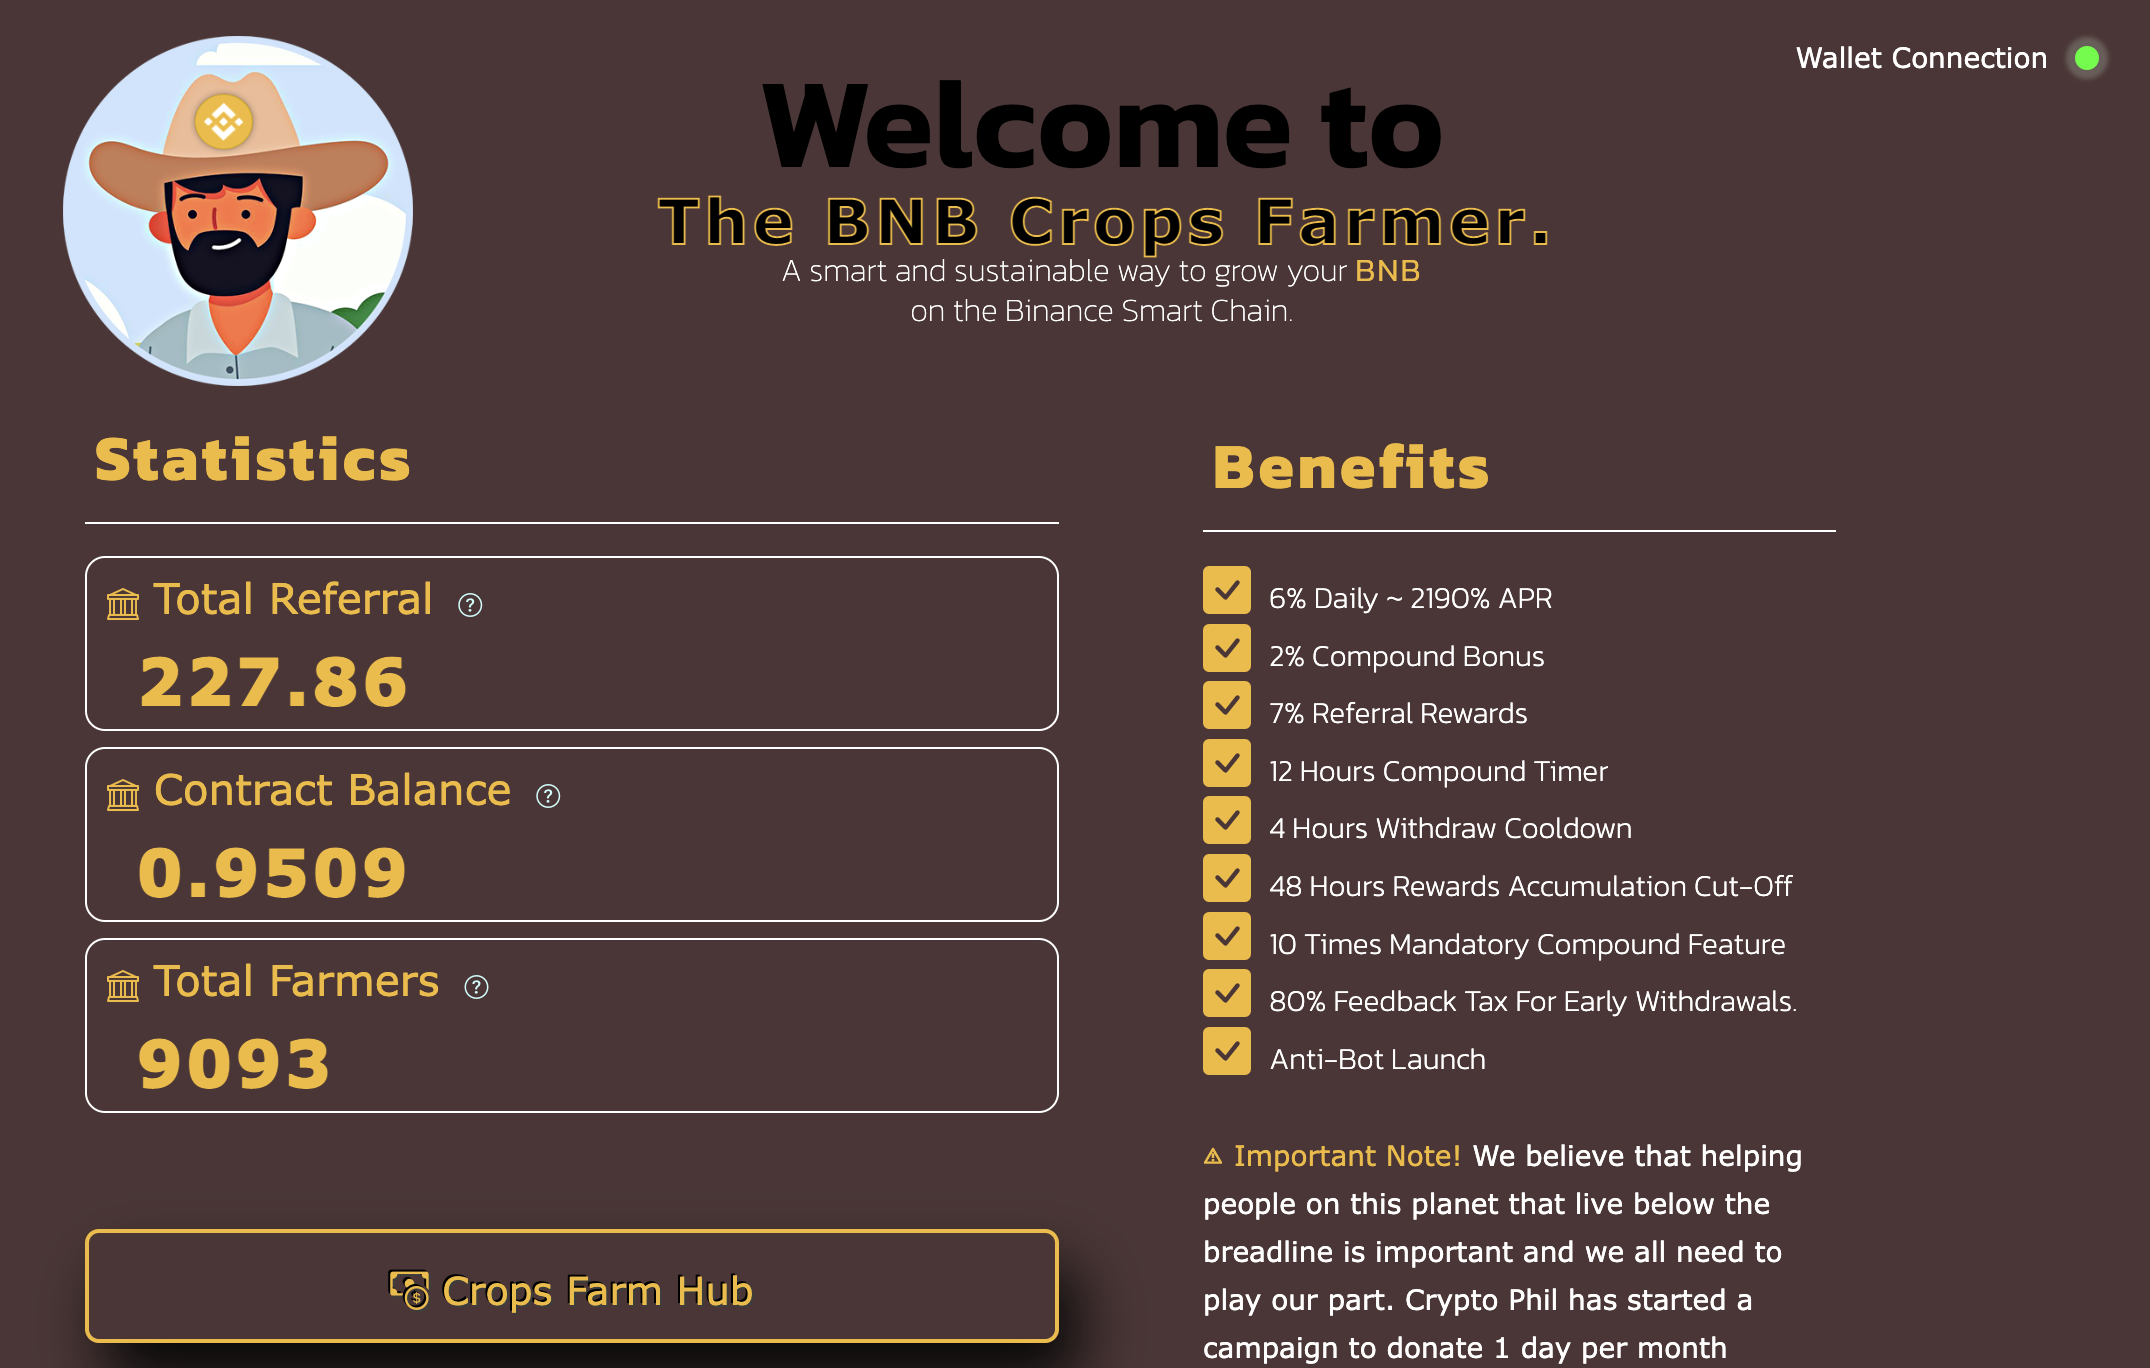 The BNB Crops Farmer cover